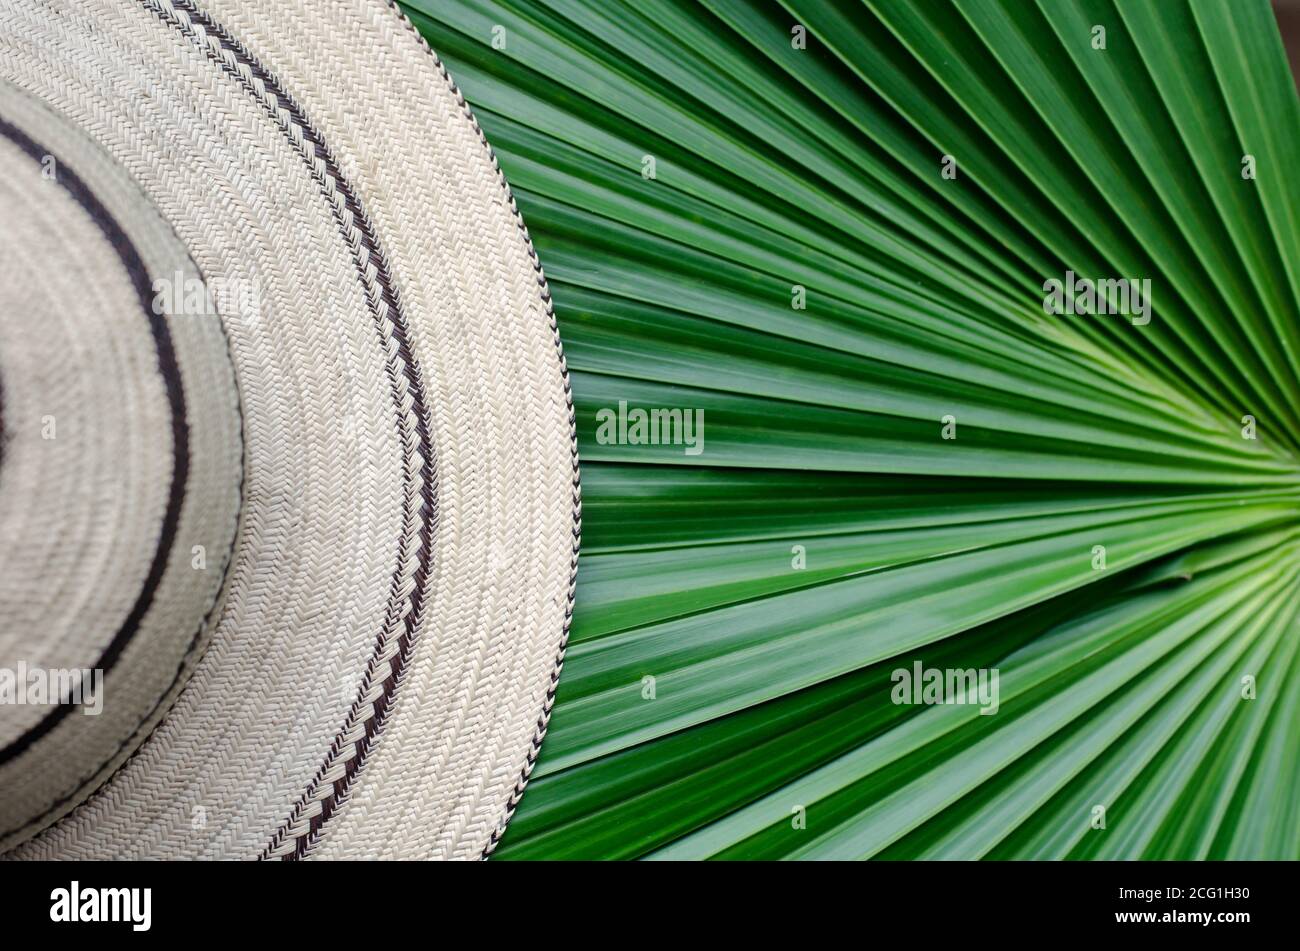 Panamaische Hüte sind handgefertigt mit einer Vielzahl von Techniken, um die natürlichen Fasern der Toquilla-Palme "Carludovica palmata" zu verarbeiten. Stockfoto